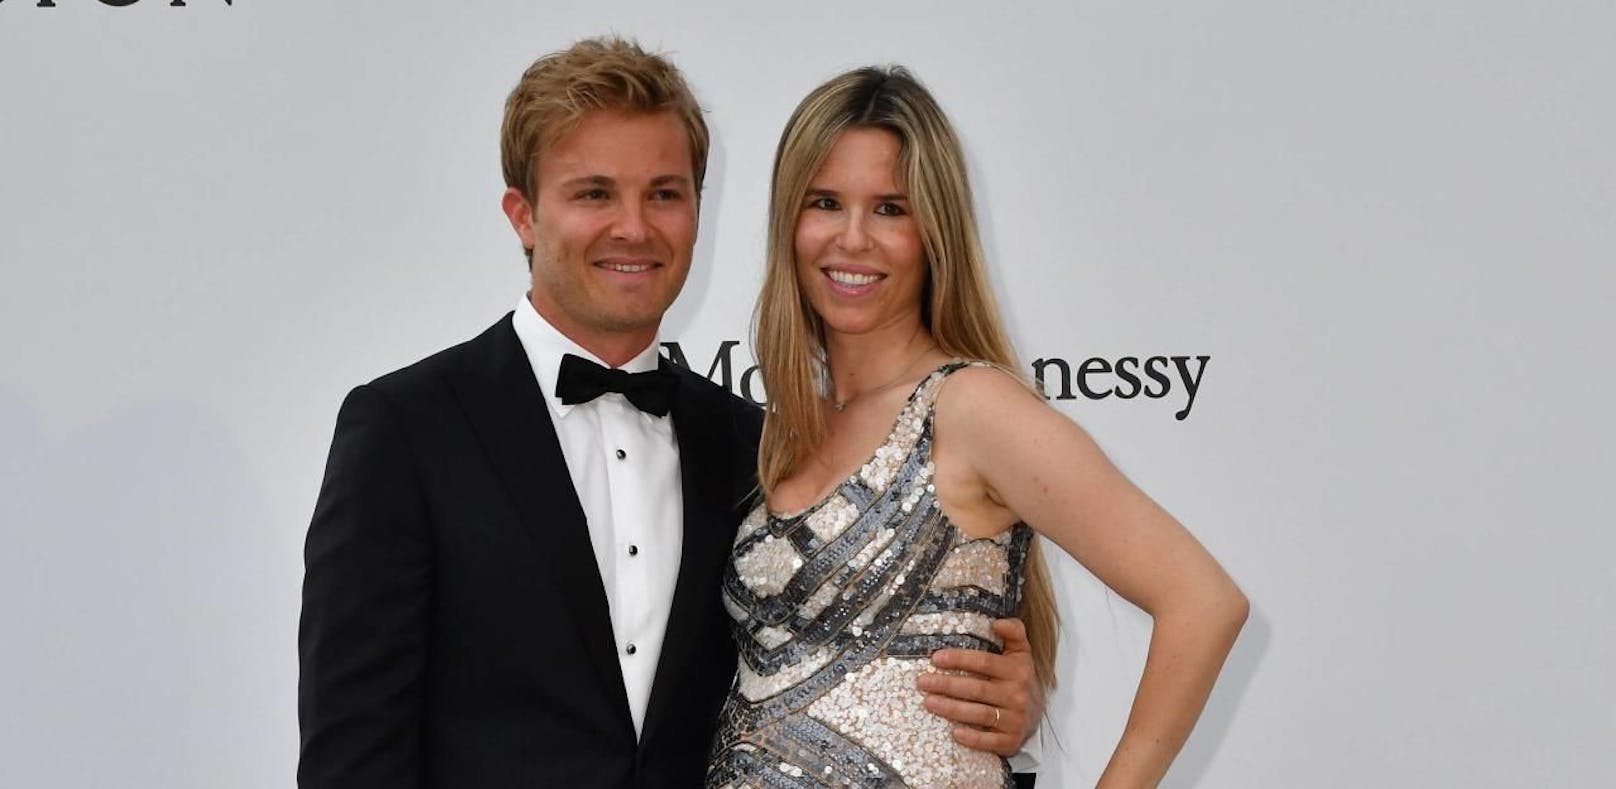 Nico Rosberg freut sich über zweites Töchterlein